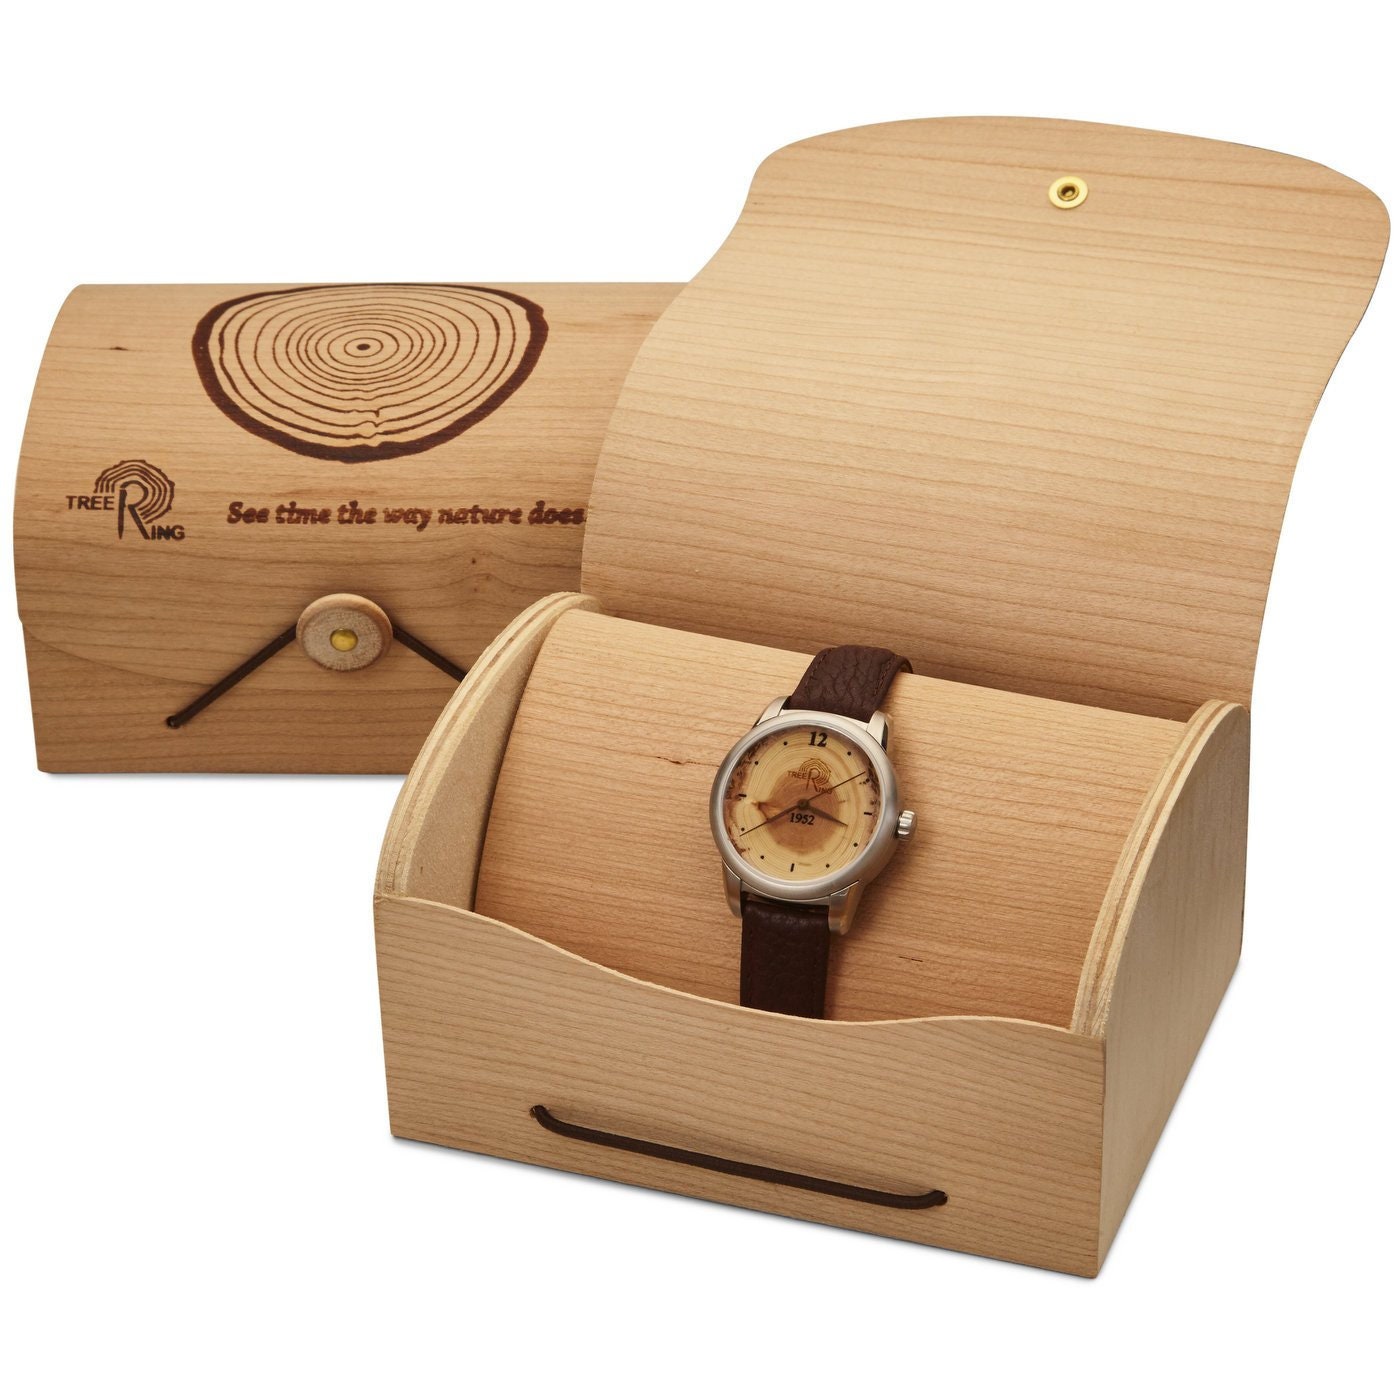 Groomsmen gift watch, groomsman watch, personalized watch